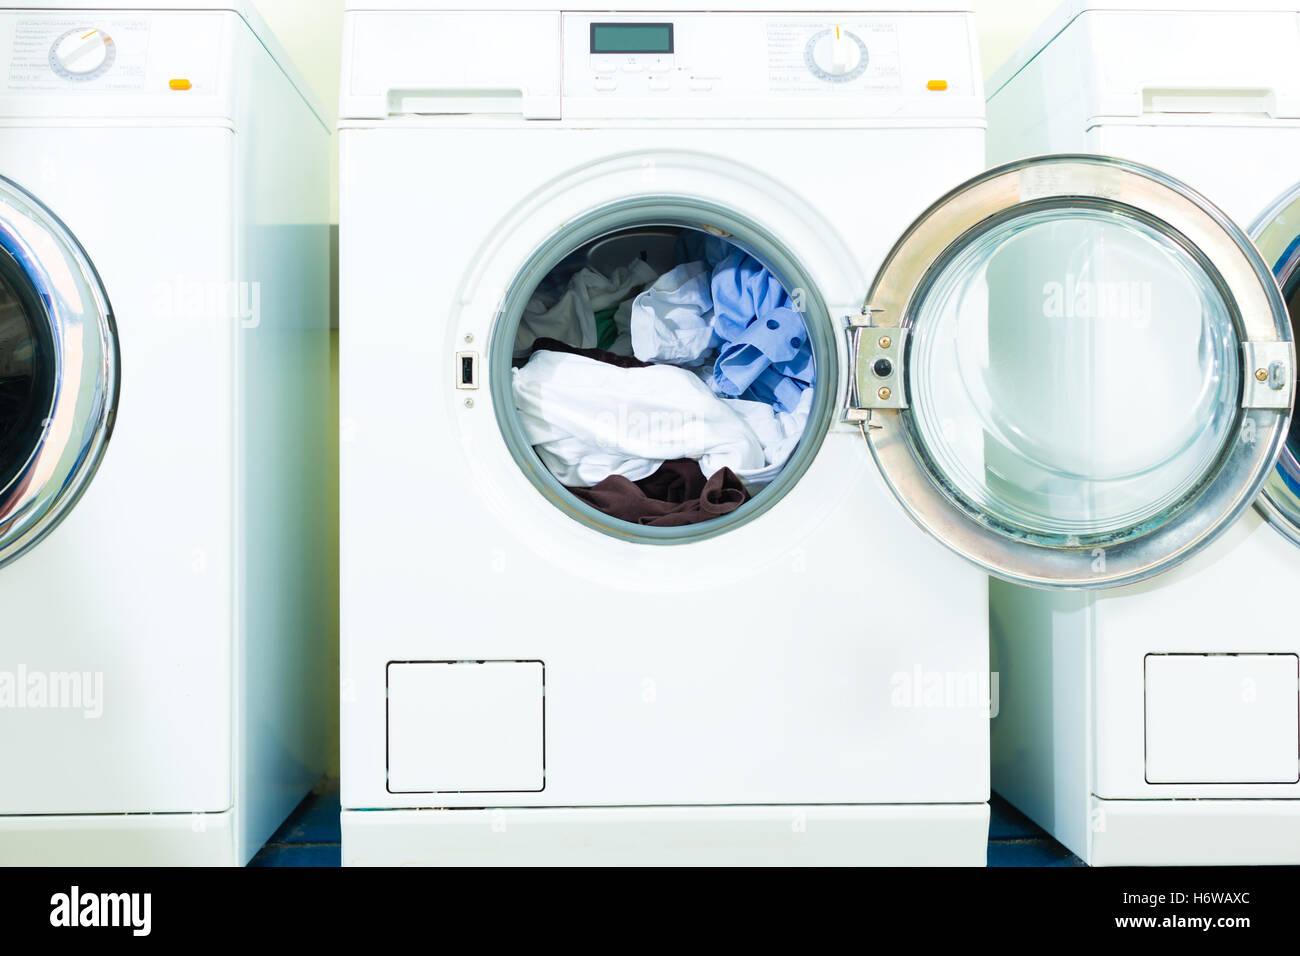 Wäsche waschen schmutzige Waschmaschine Waschküche Waschsalon Wäscheservice öffentlichen Reinigen waschen schmutzige Wäsche Waschmaschine Stockfoto